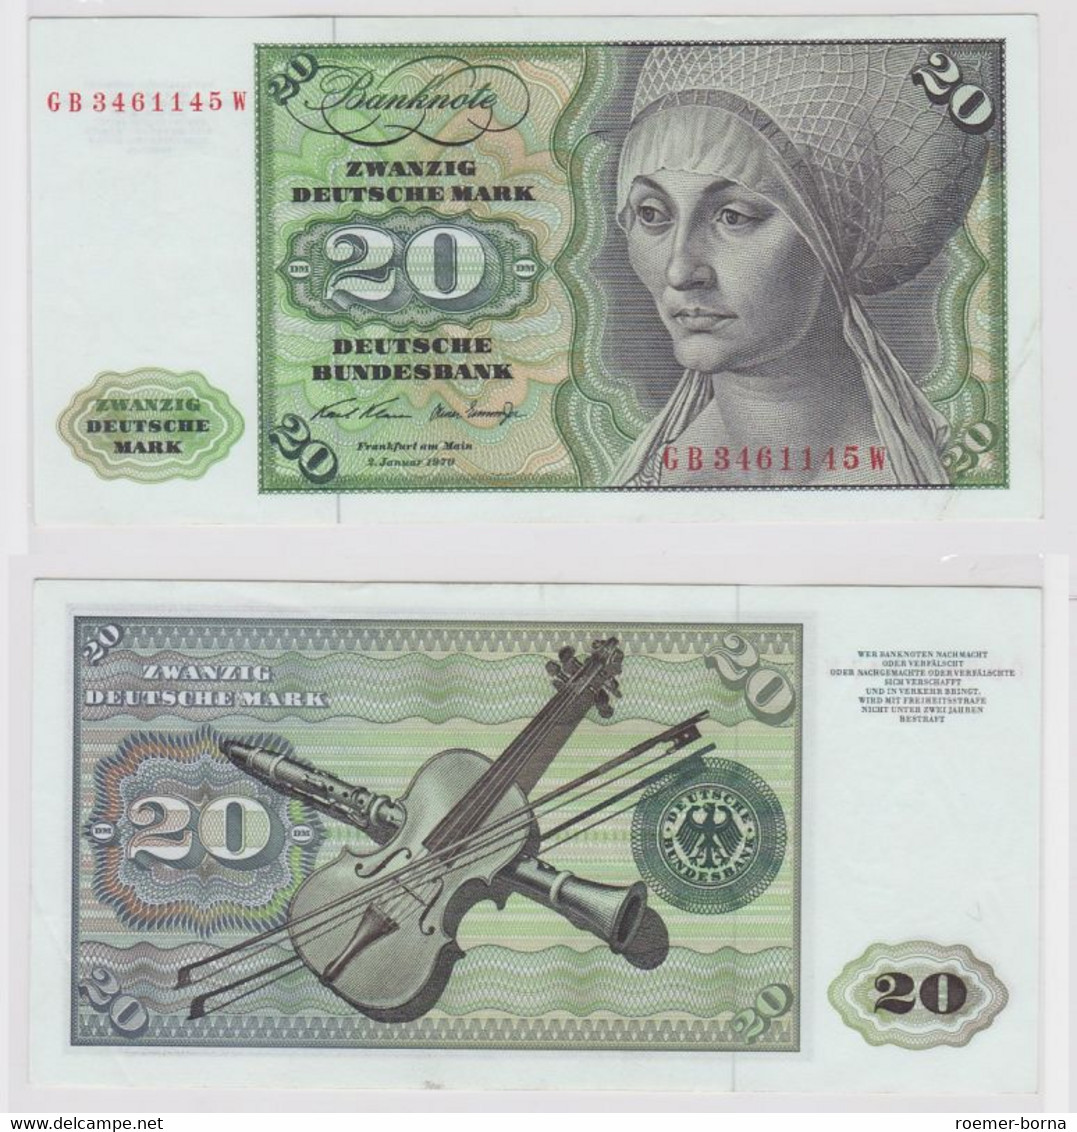 T148357 Banknote 20 DM Deutsche Mark Ro. 271a Schein 2.Jan. 1970 KN GB 3461145 W - 20 DM